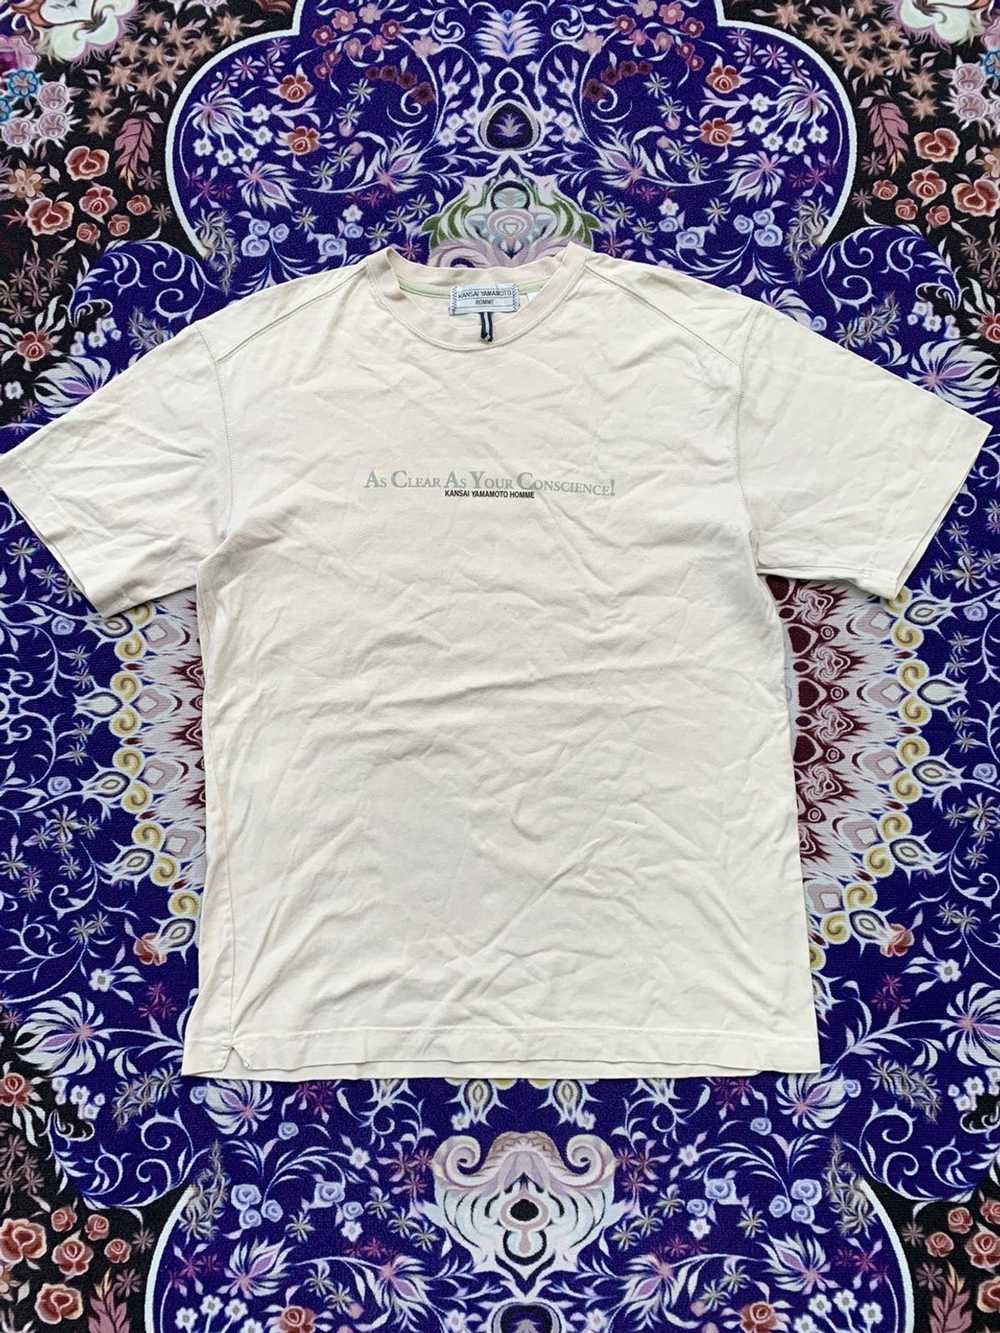 Kansai Yamamoto Kansai Yamamoto T-shirt - image 1